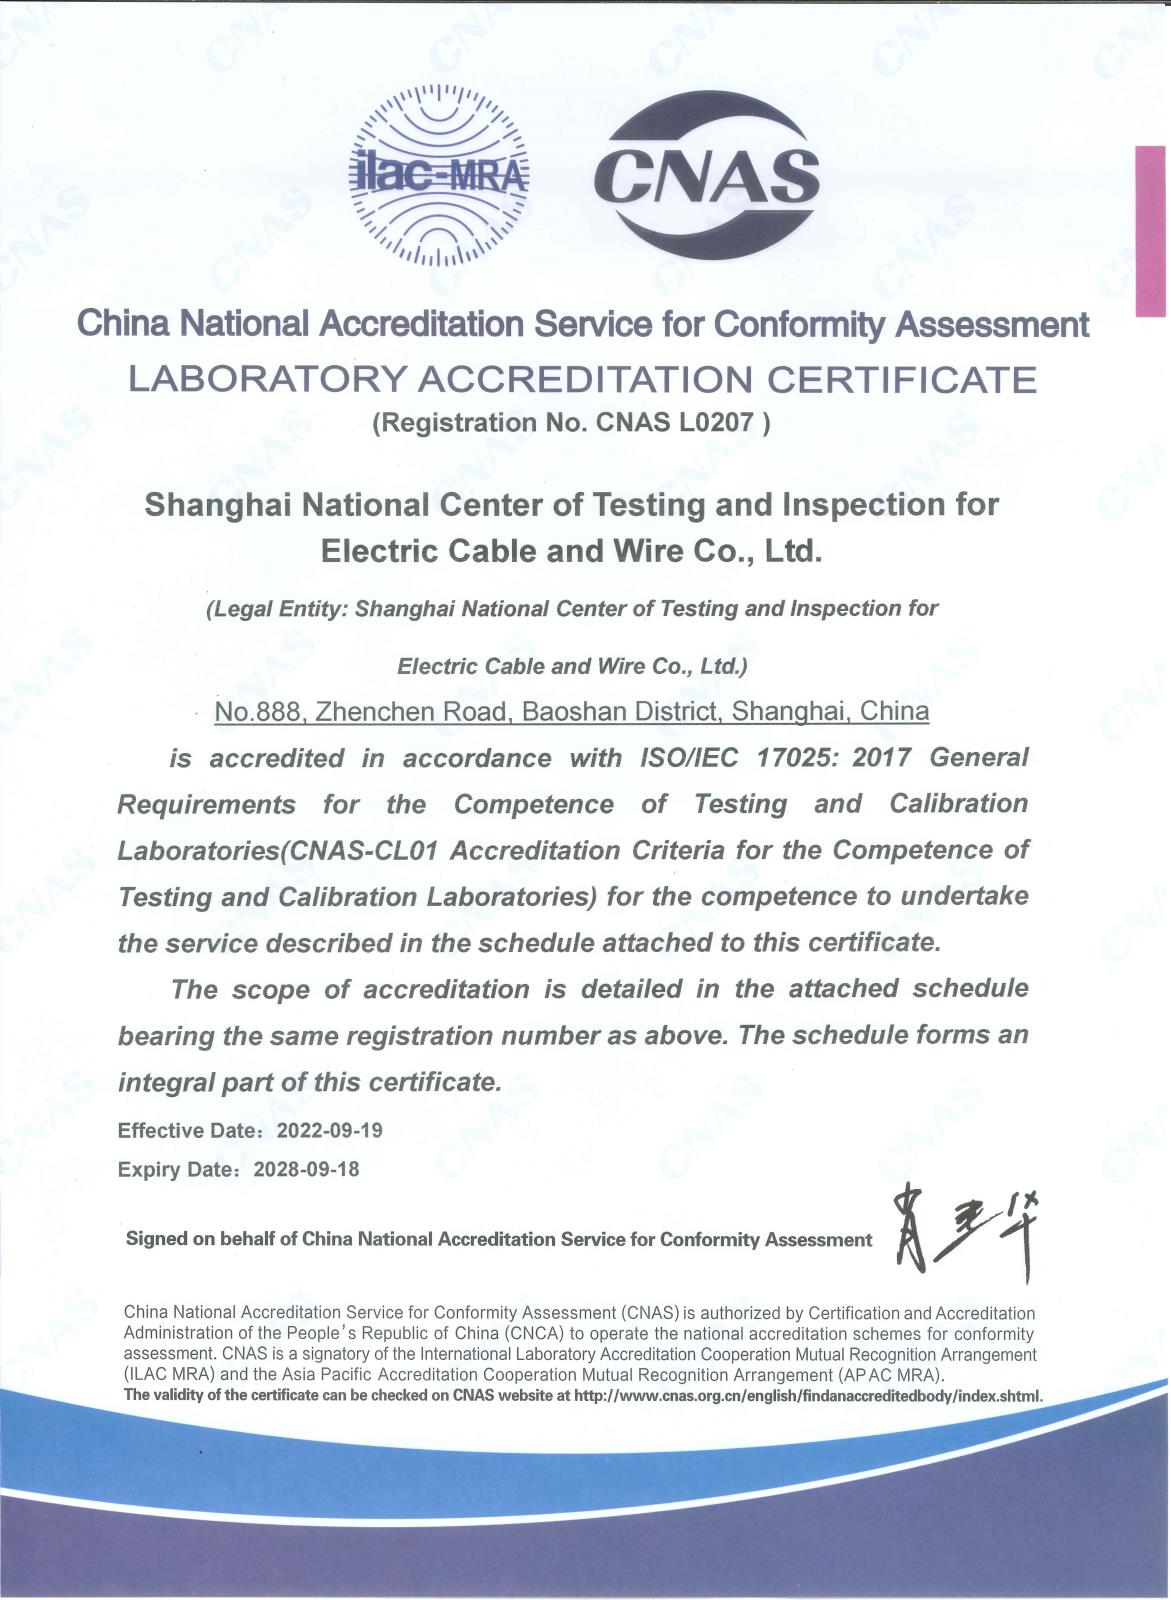 上海国缆检测股份有限公司实验室认可证书-英文版